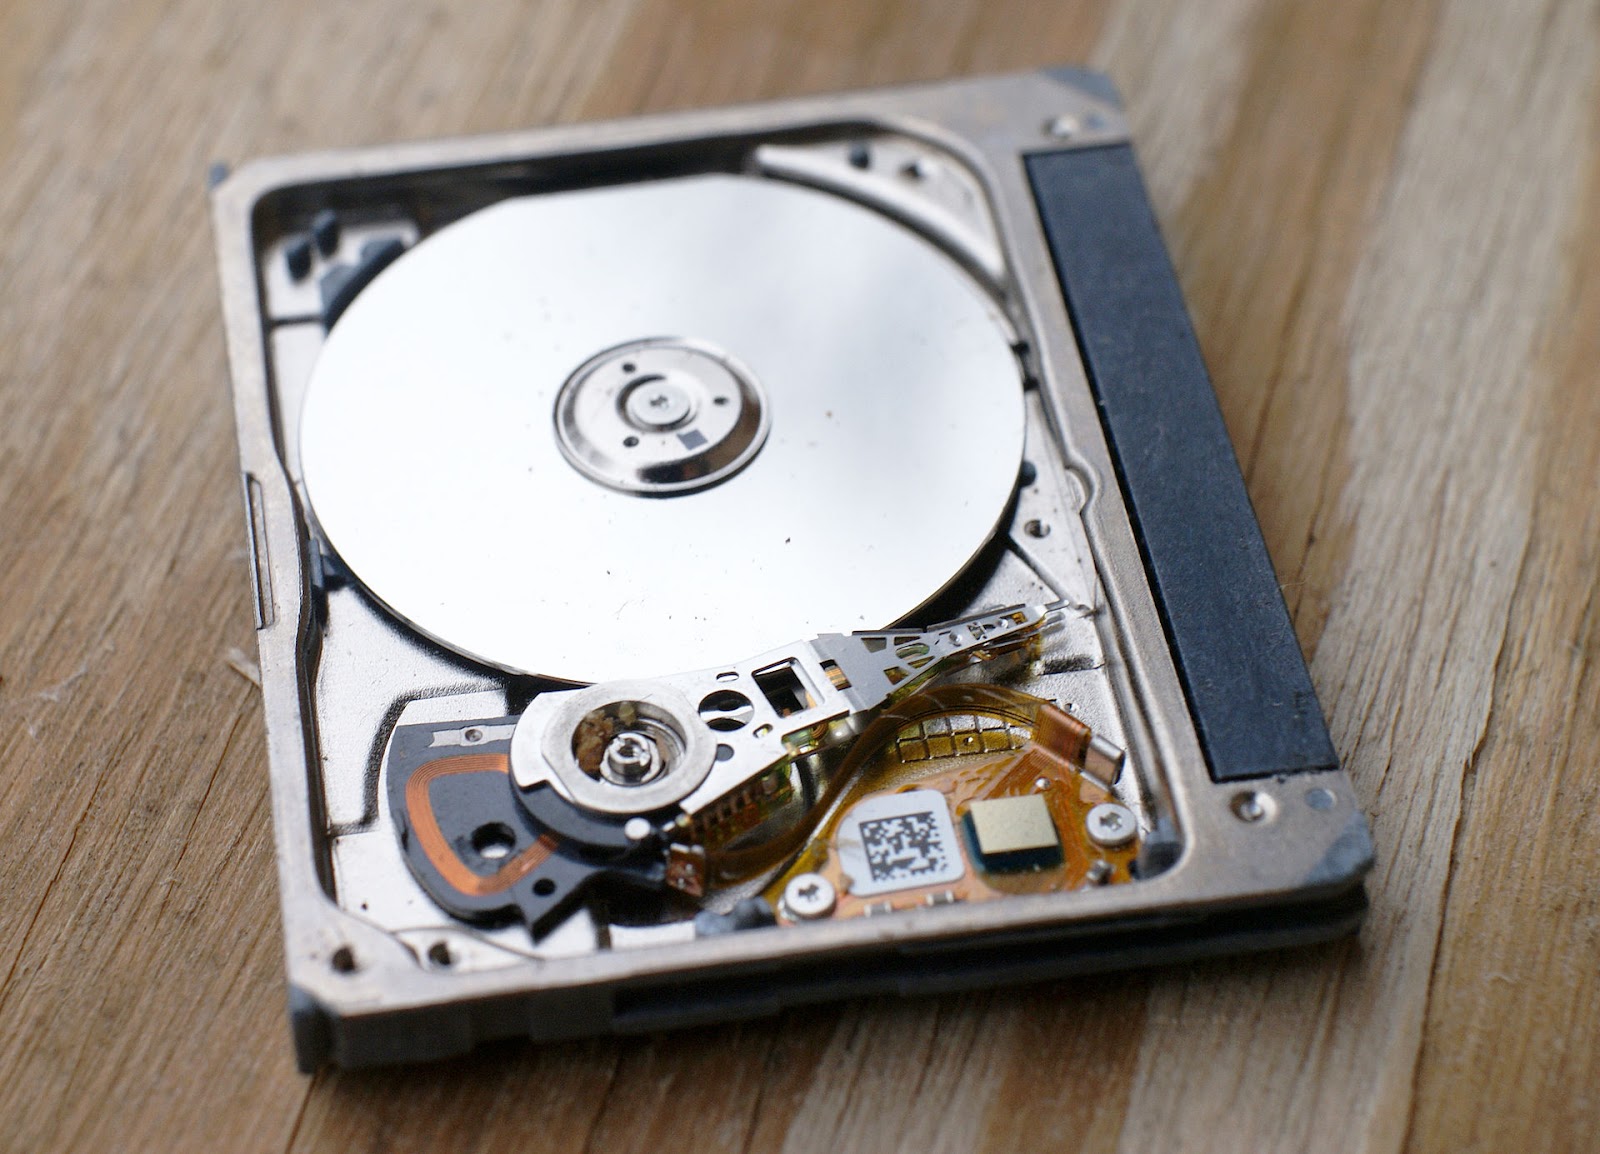 Открытый жесткий диск Seagate ST1, источник Wikipedia